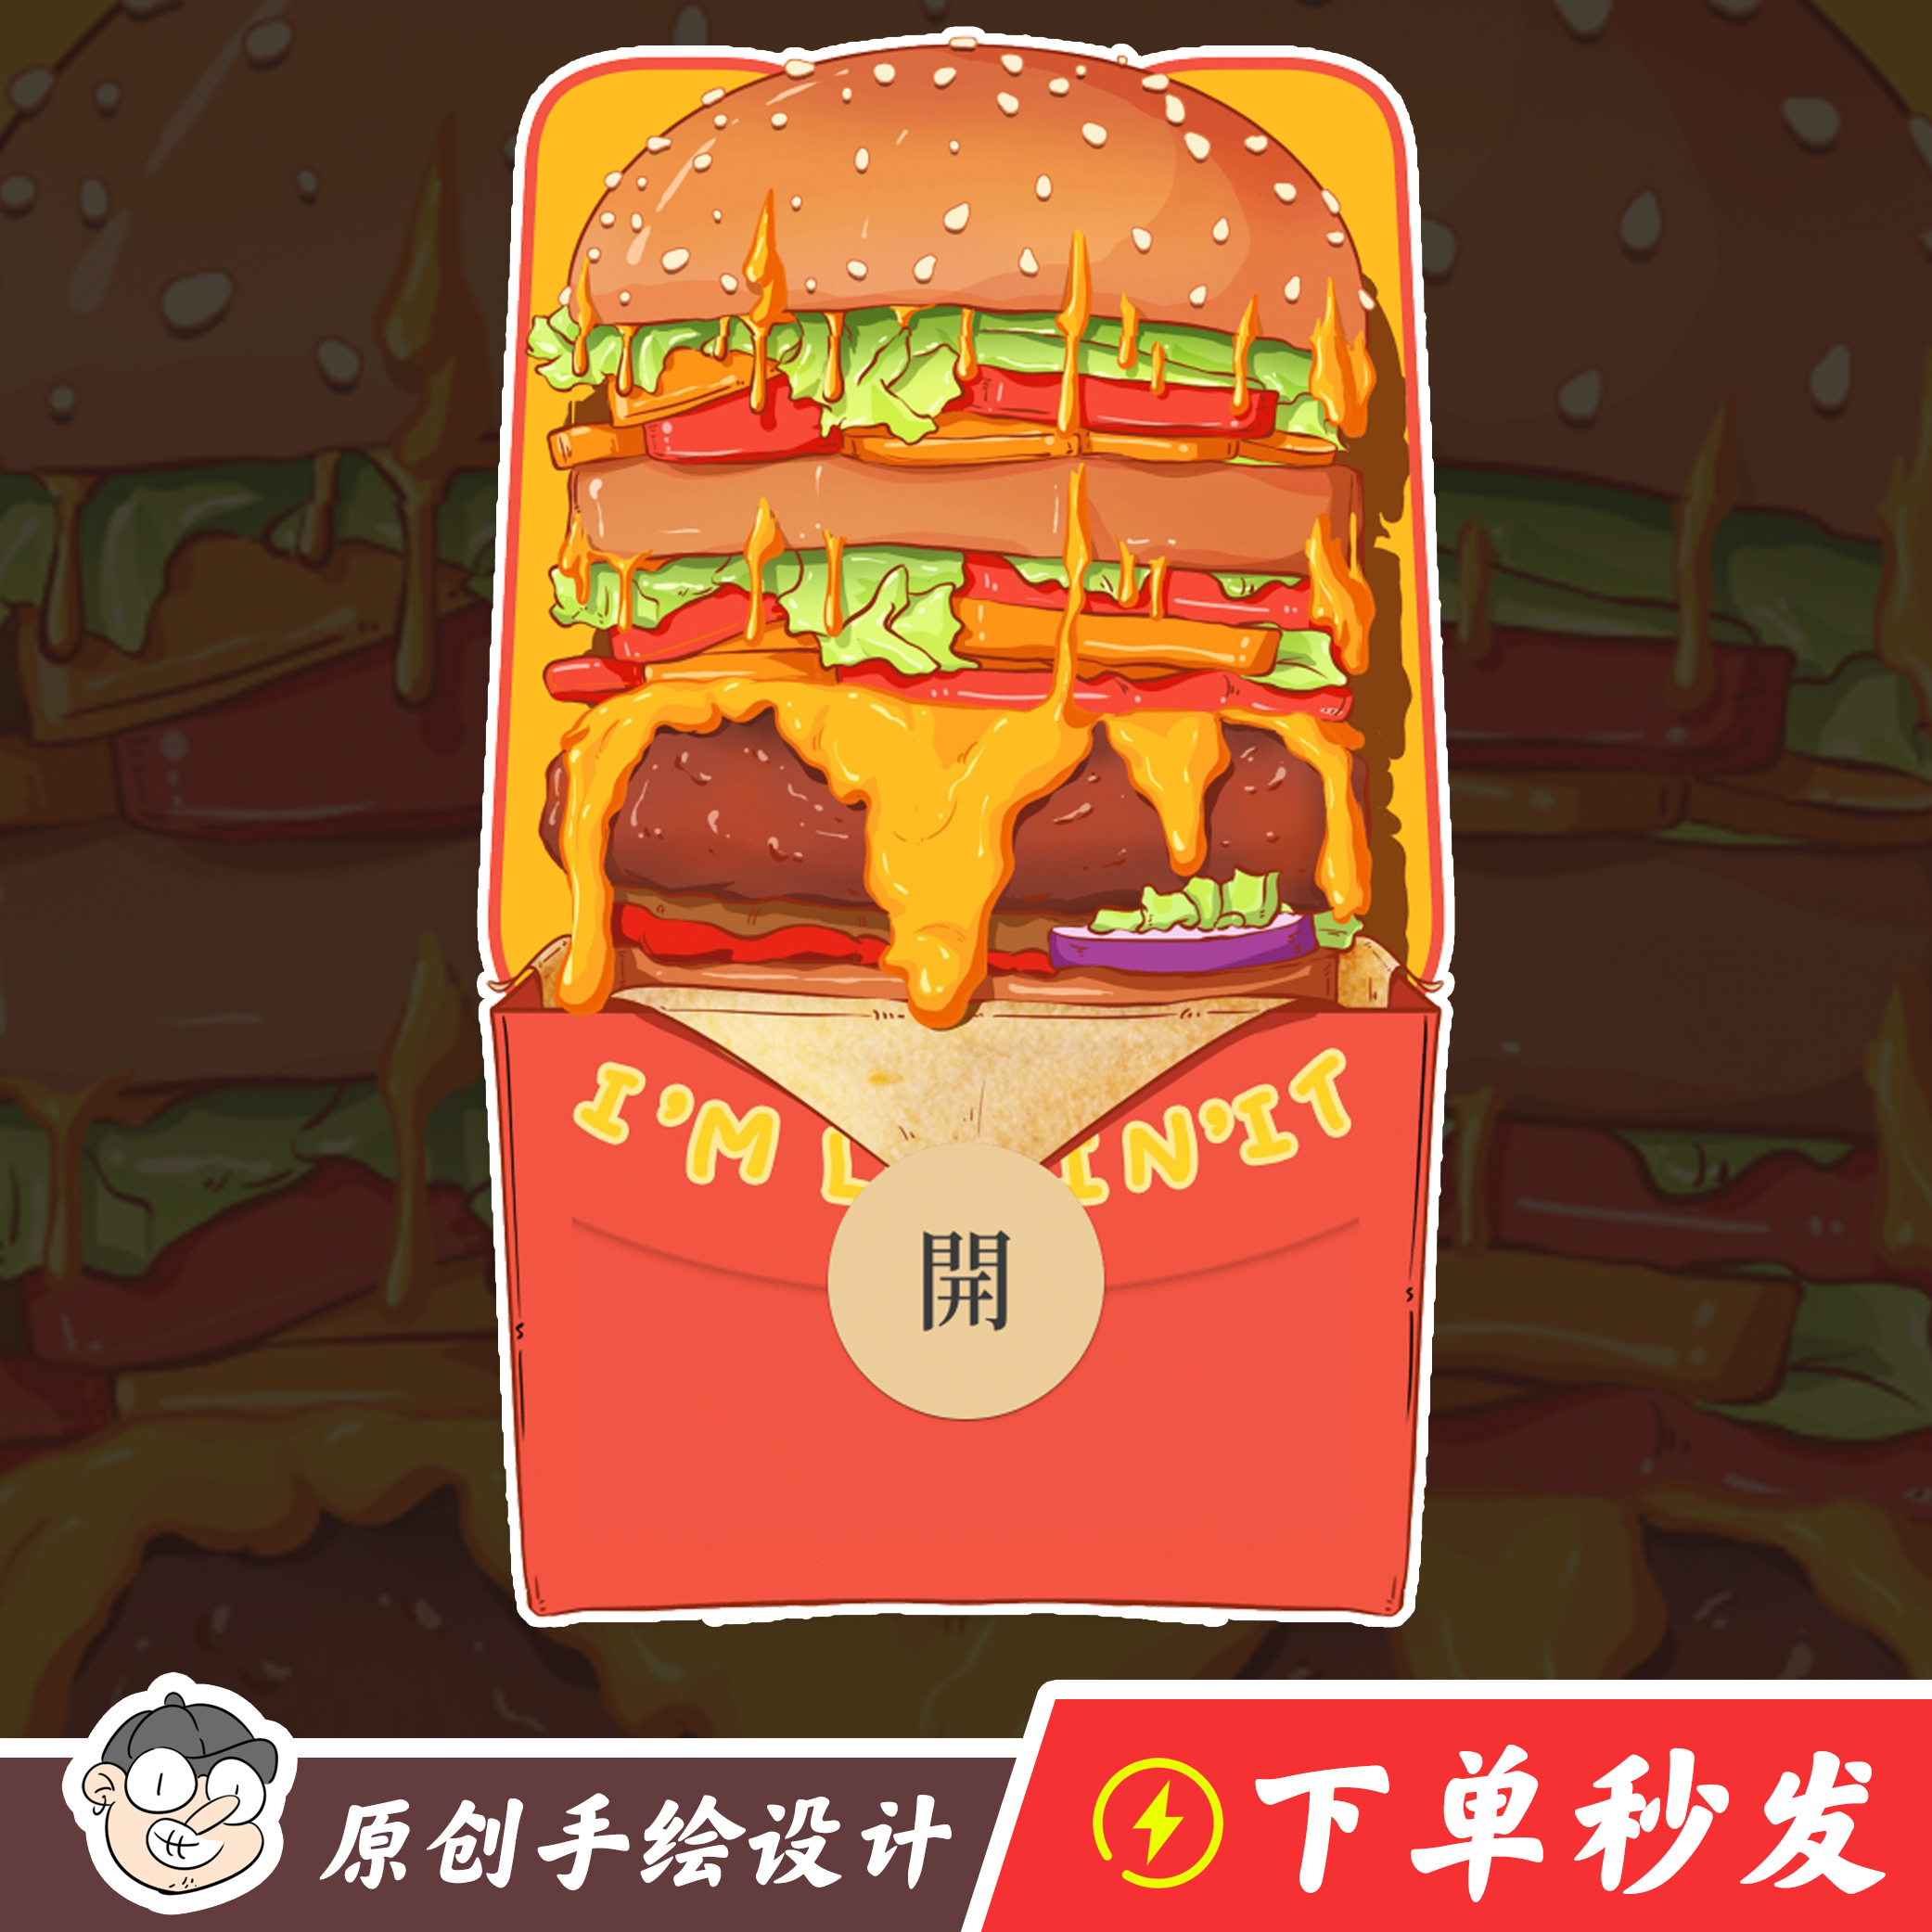 【汉堡包】微信红包封面吃货麦当劳肯德基美式汉堡猎奇小礼物惊喜